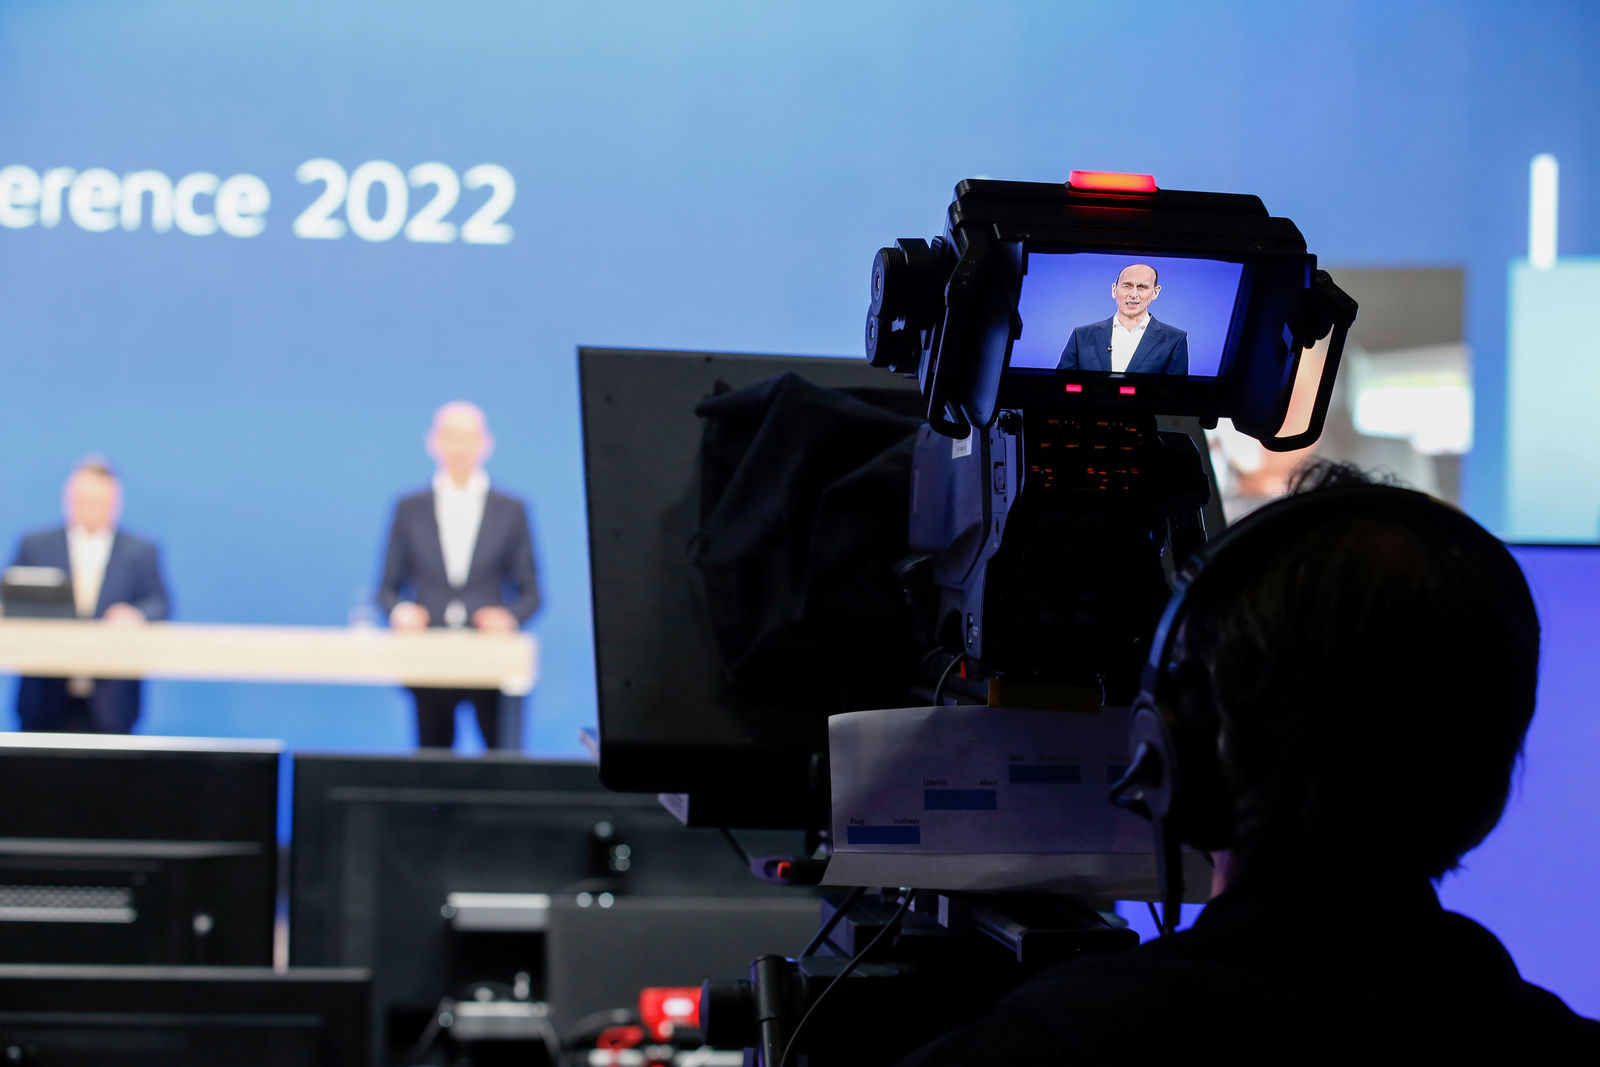 Jahrespressekonferenz der Marke Volkswagen 2022